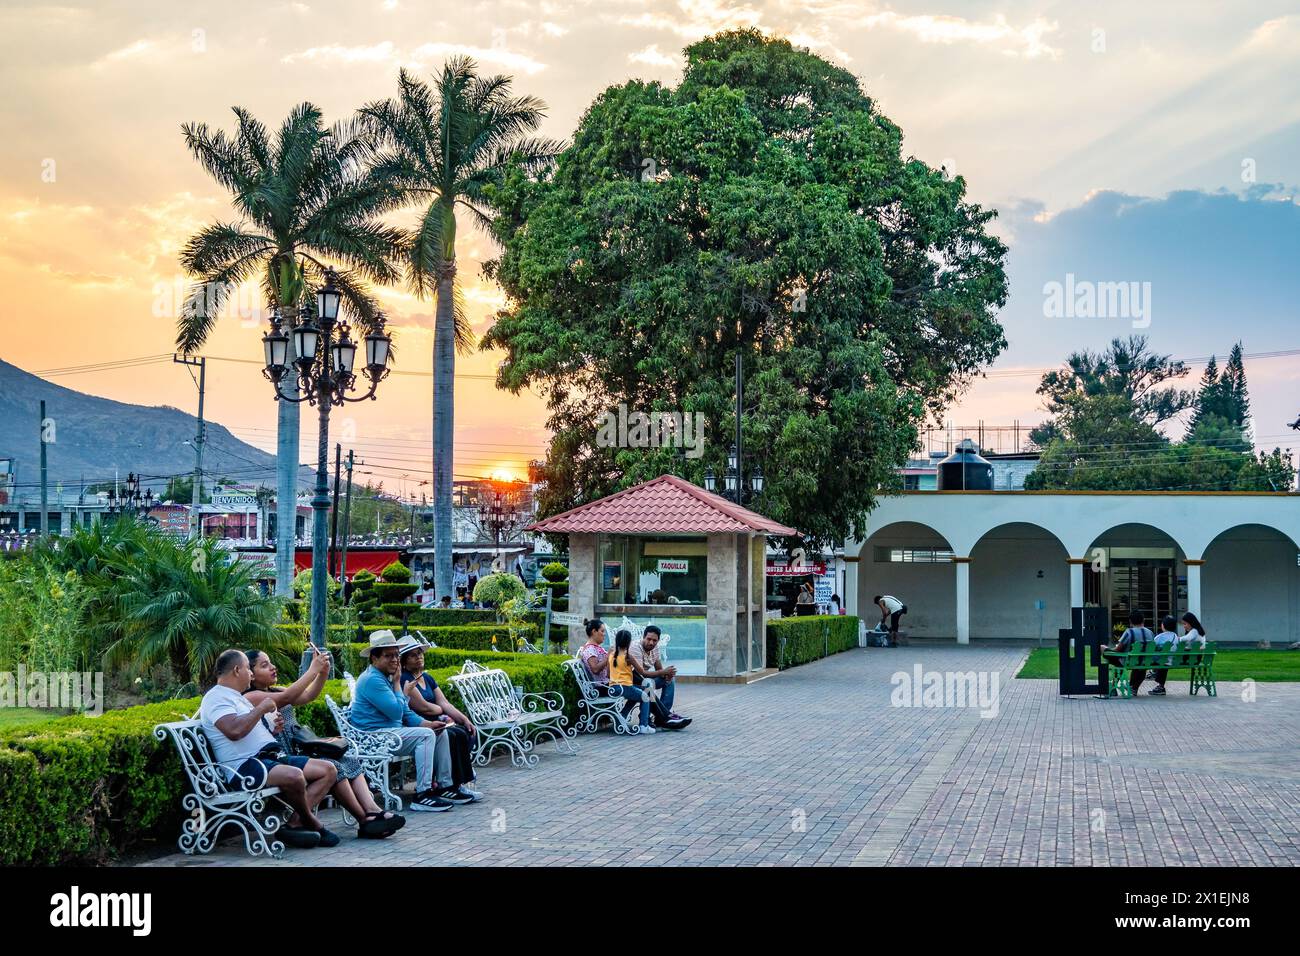 La gente gode di un bellissimo tramonto nel centro della cittadina di Santa María del Tule, Oaxaca, Messico. Foto Stock